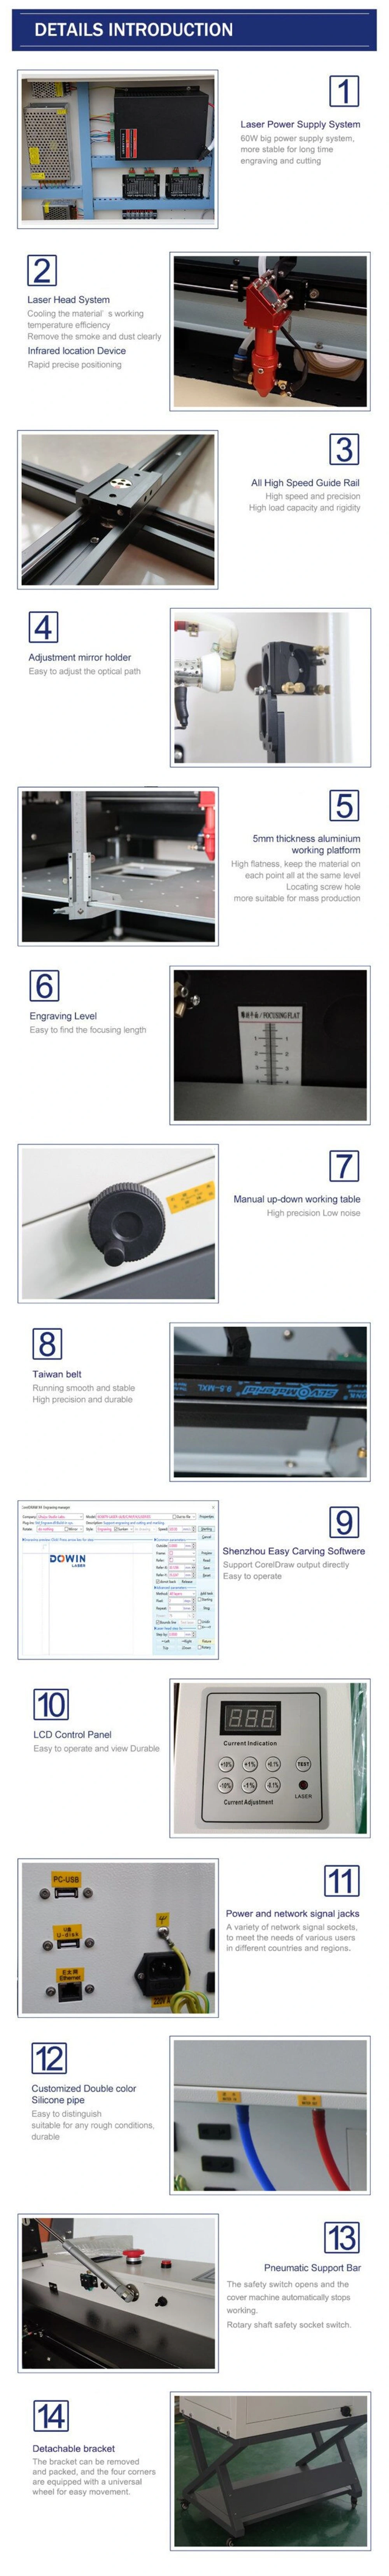 Desktop 60W CNC CO2 Laser Cutting Engraving Machine 4060 Laser Engraver Price